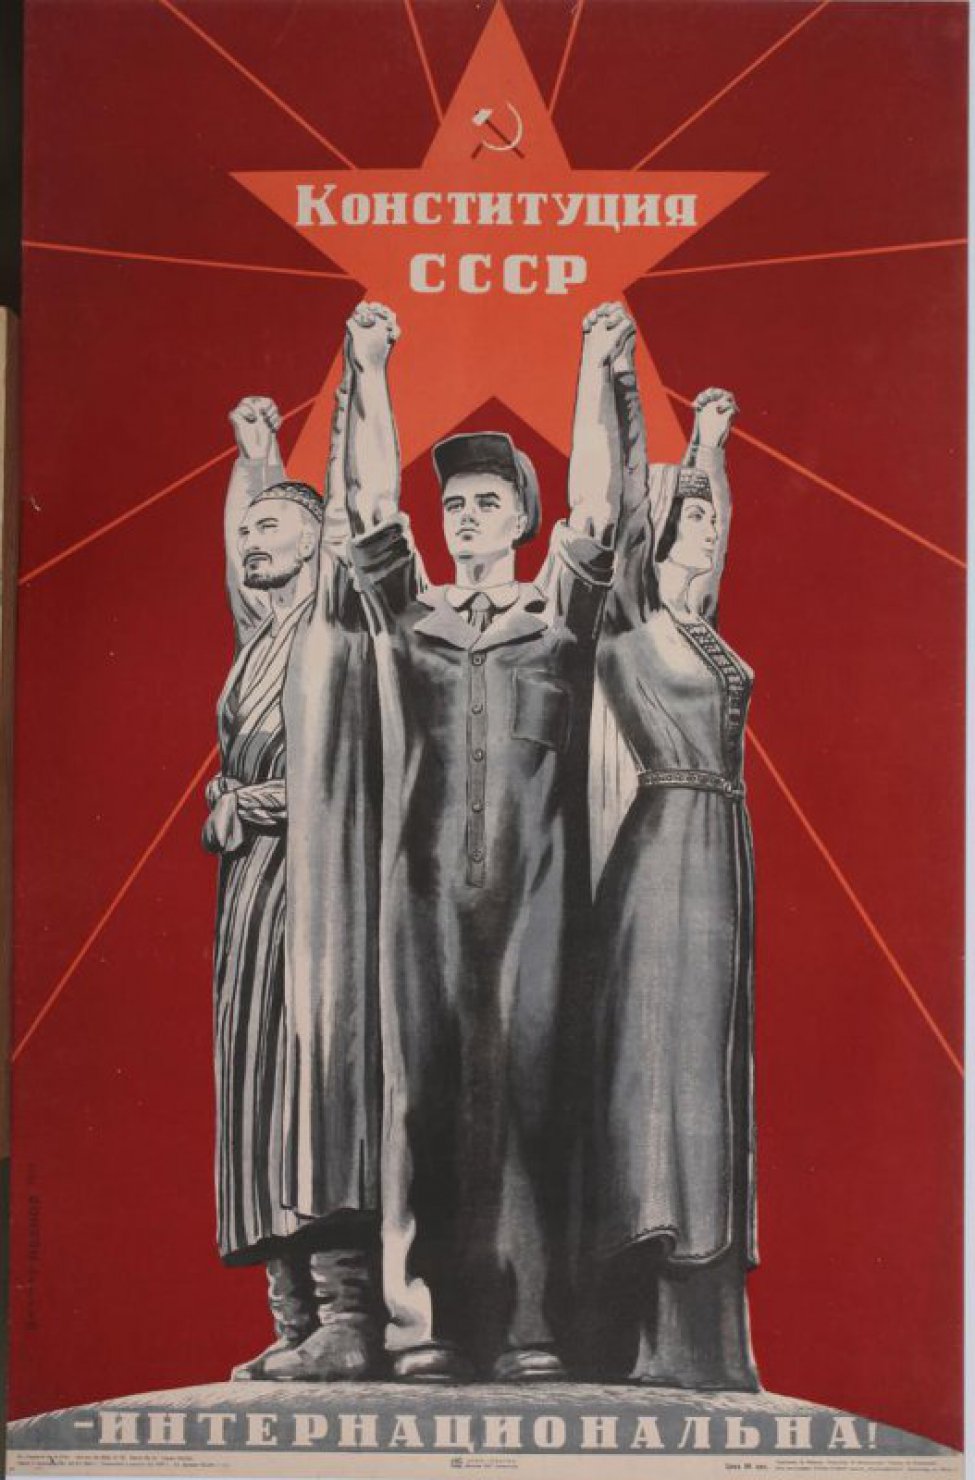 Изображены на красном фоне во весь рост рука в руку, в середине рабочий в комбинзоне, слева Узбек в полосатом халате и тюбетейке. Справа грузинка в национальном костюме. Над их головой большая звезда с лучами.